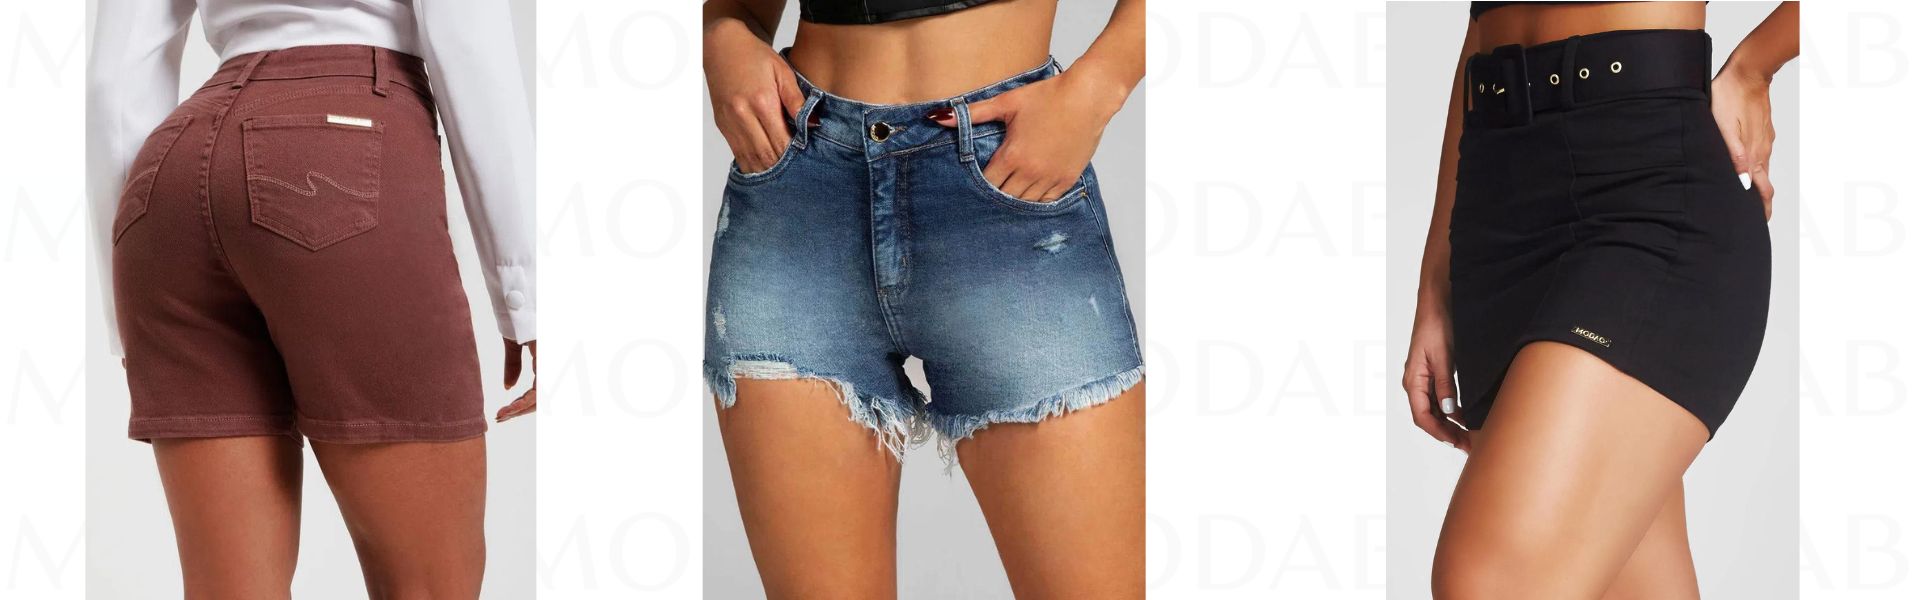 Shorts Jeans Modelador Basic Claro - Modab